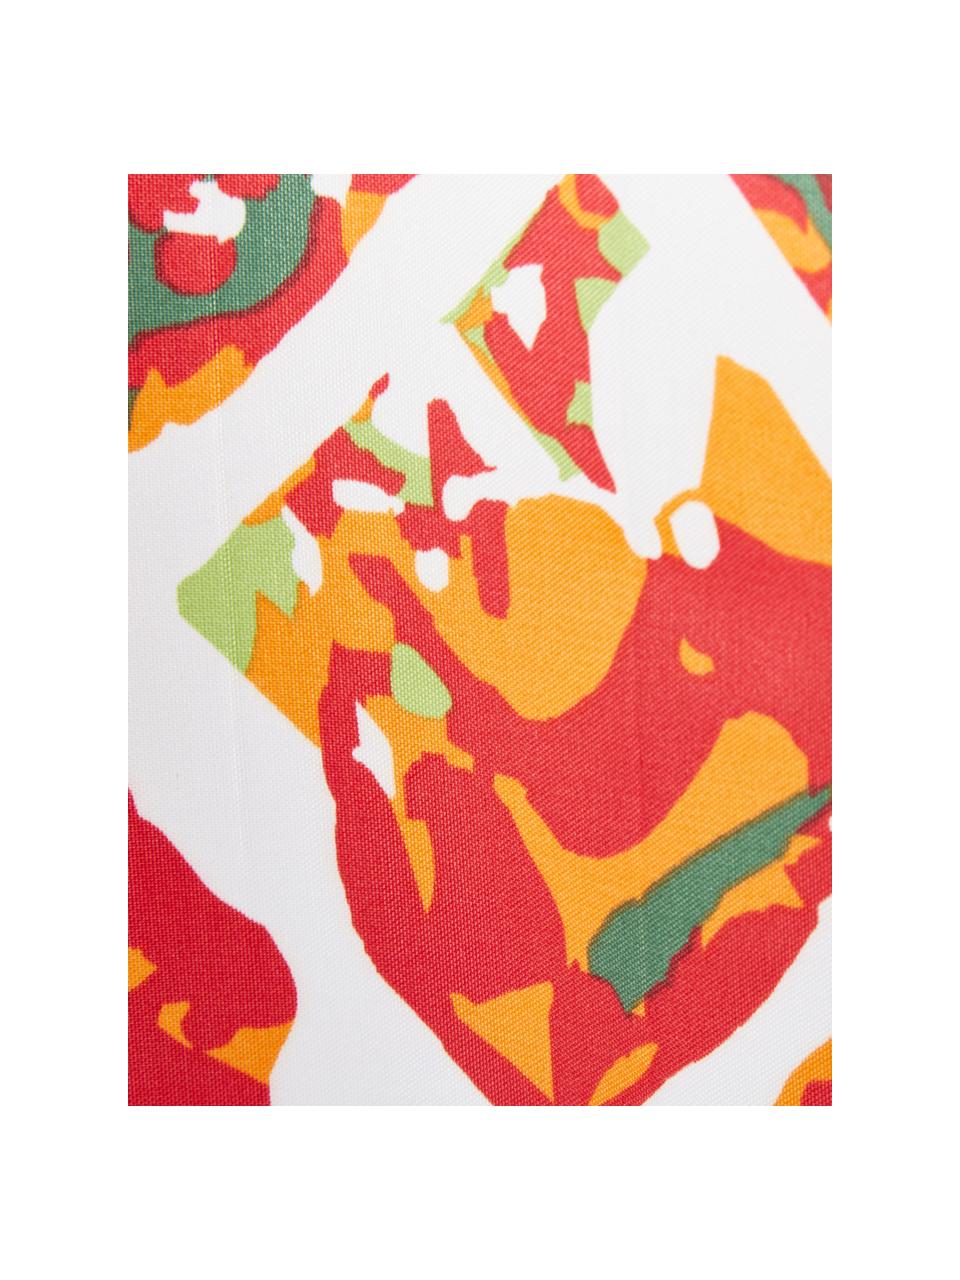 Duschvorhang Pineapple mit Ananas-Motiv, 100% Polyester
Wasserabweisend, nicht wasserdicht, Weiss, Grün, Orange, Rot, 180 x 200 cm